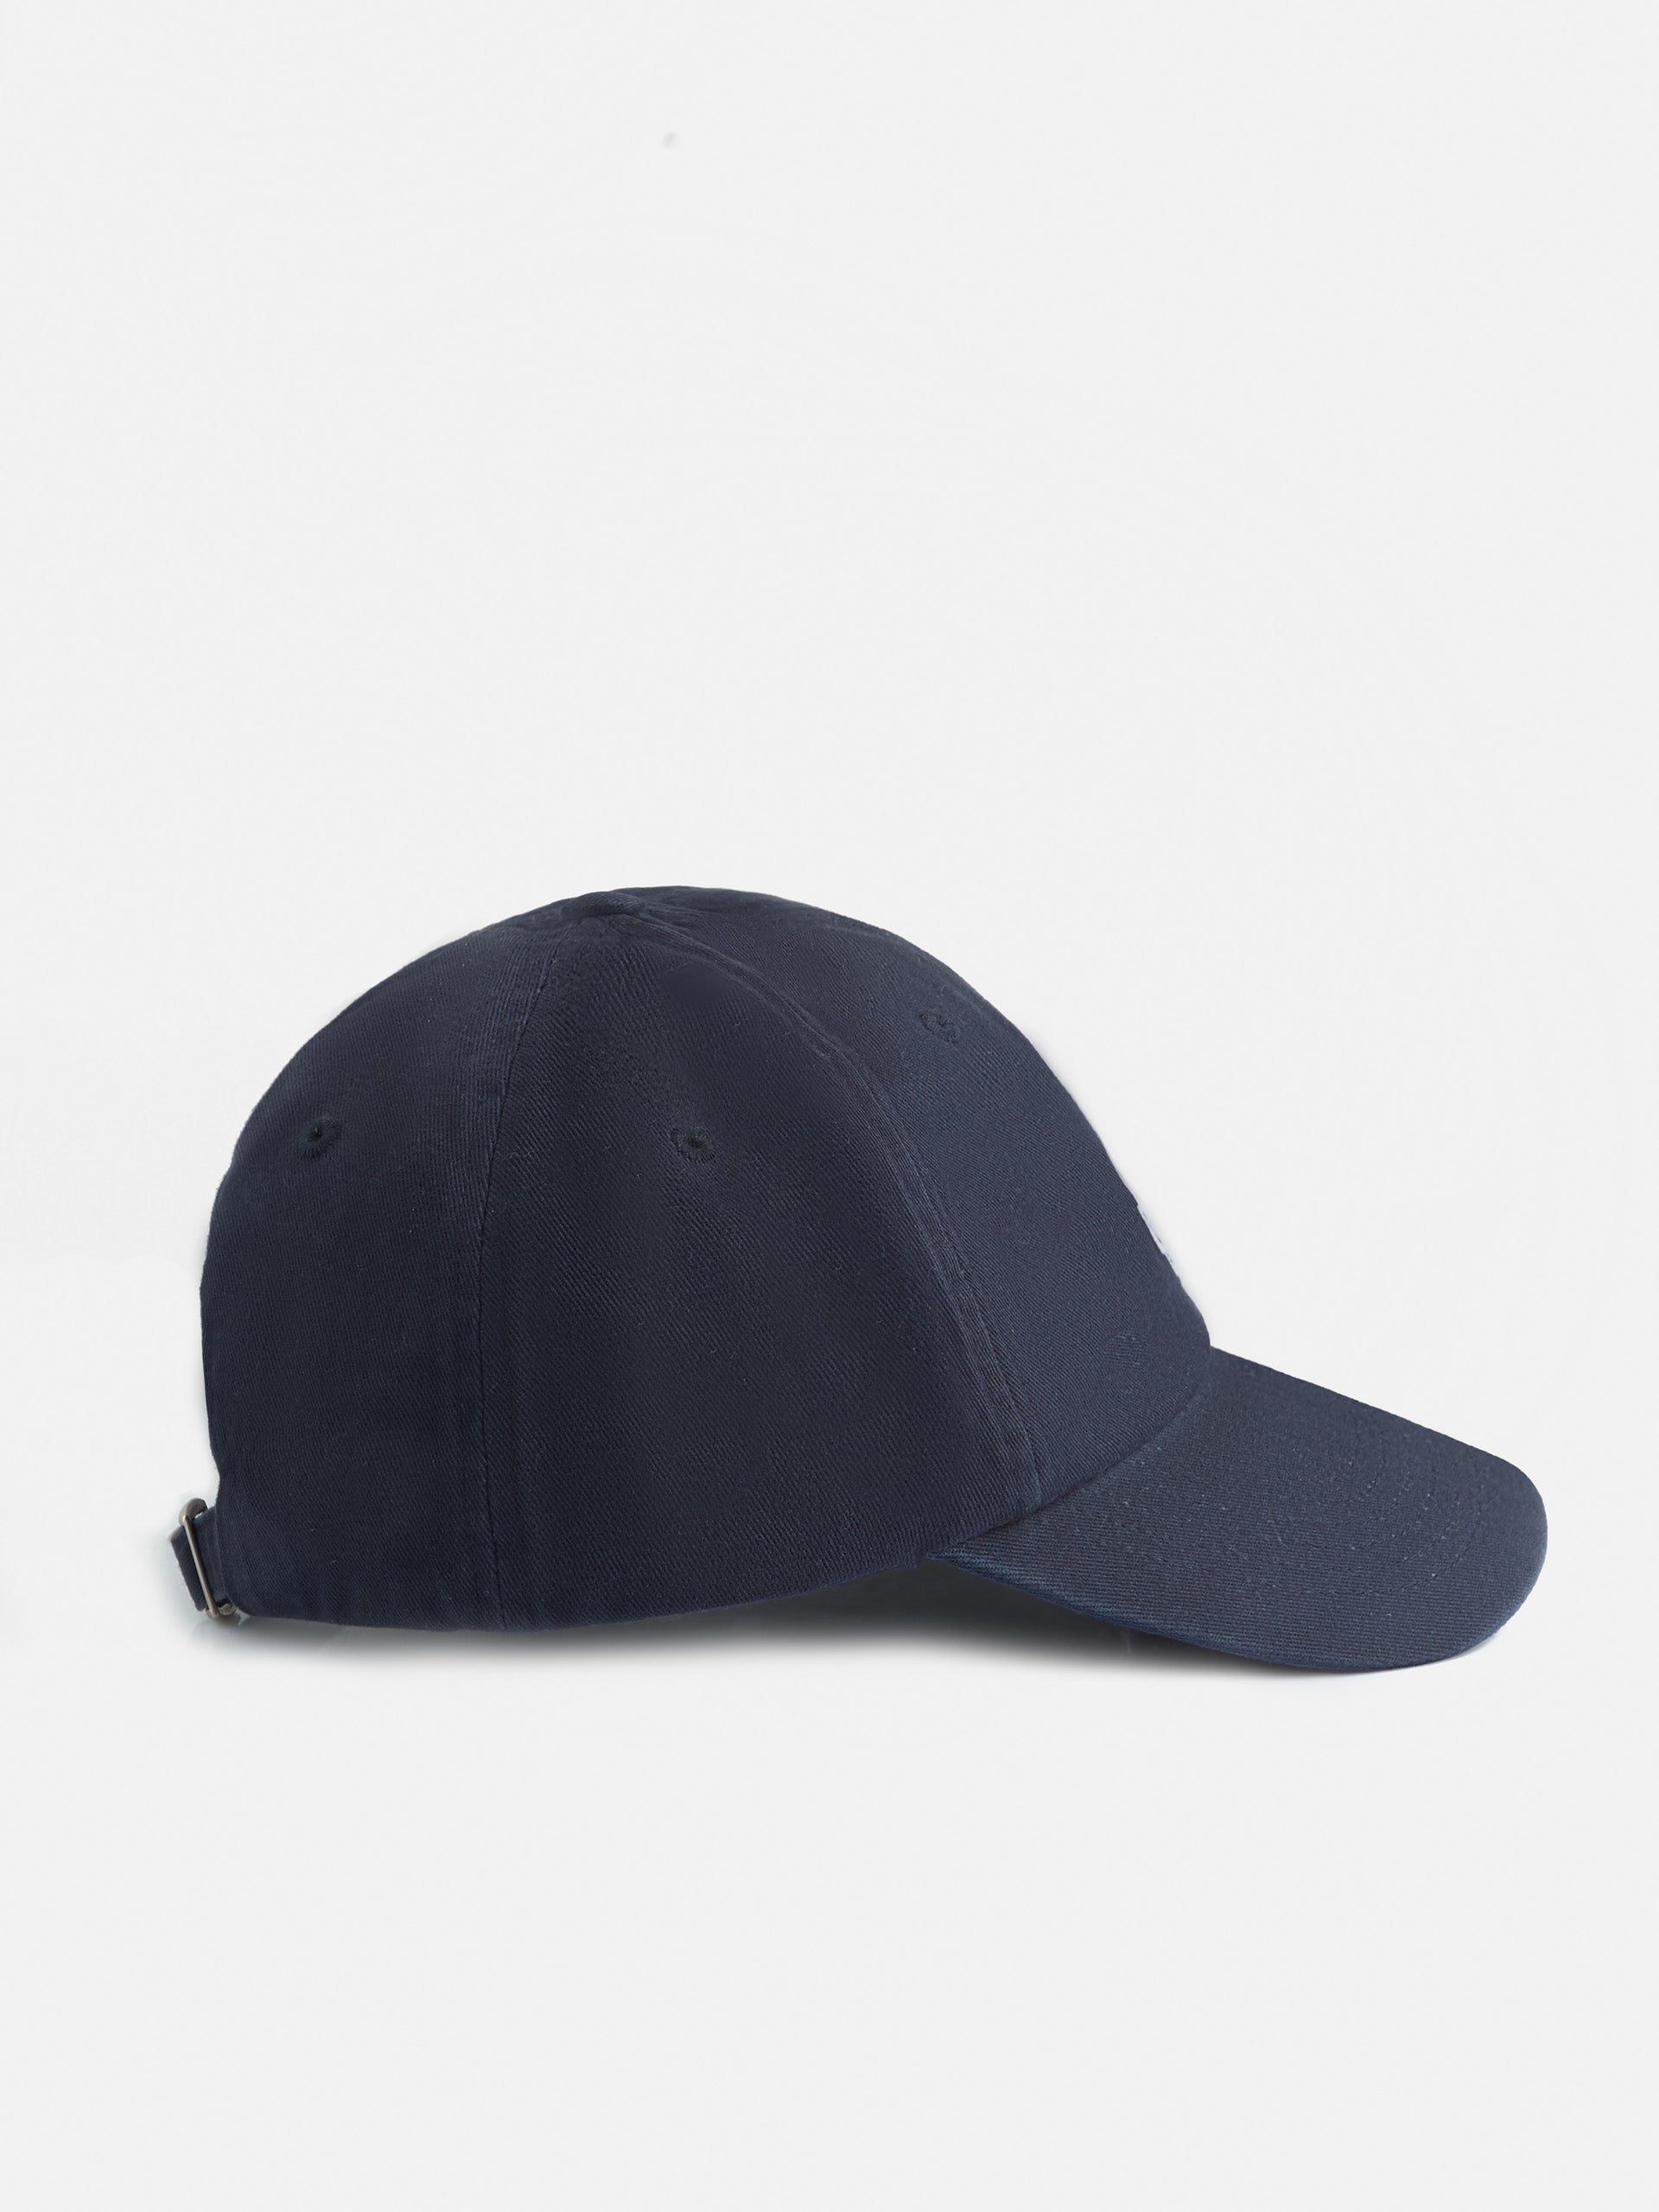 Plain navy blue racquet cap